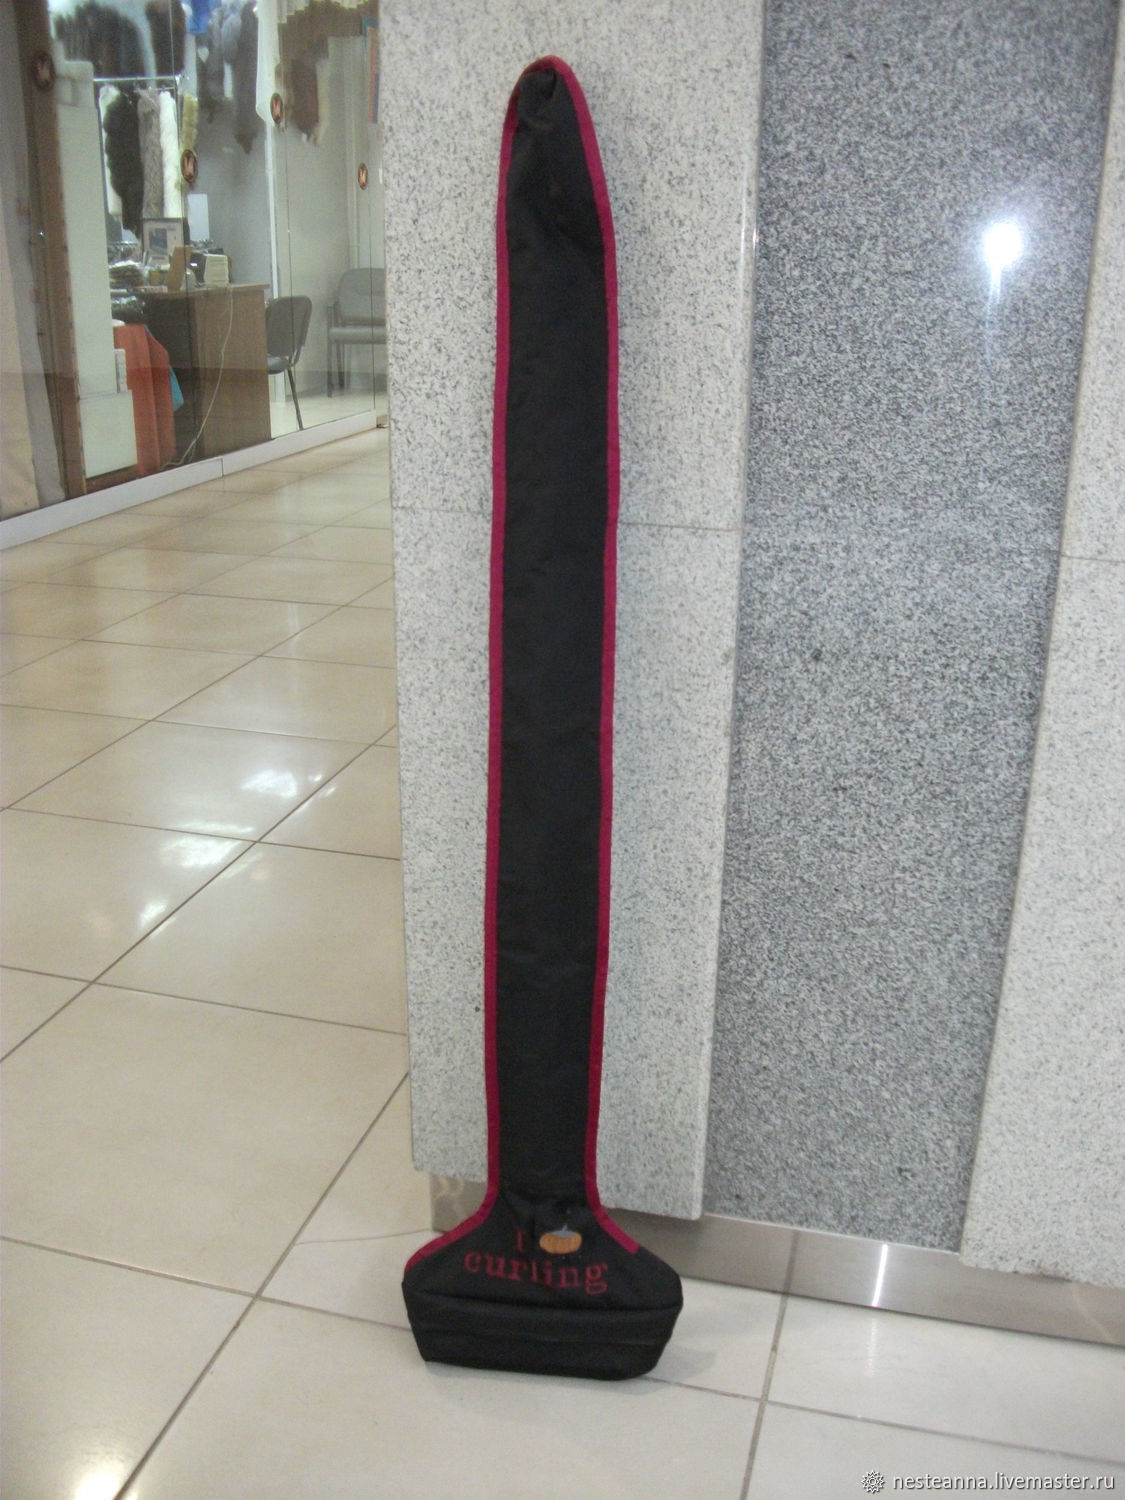 Individual Curling Broom Bag